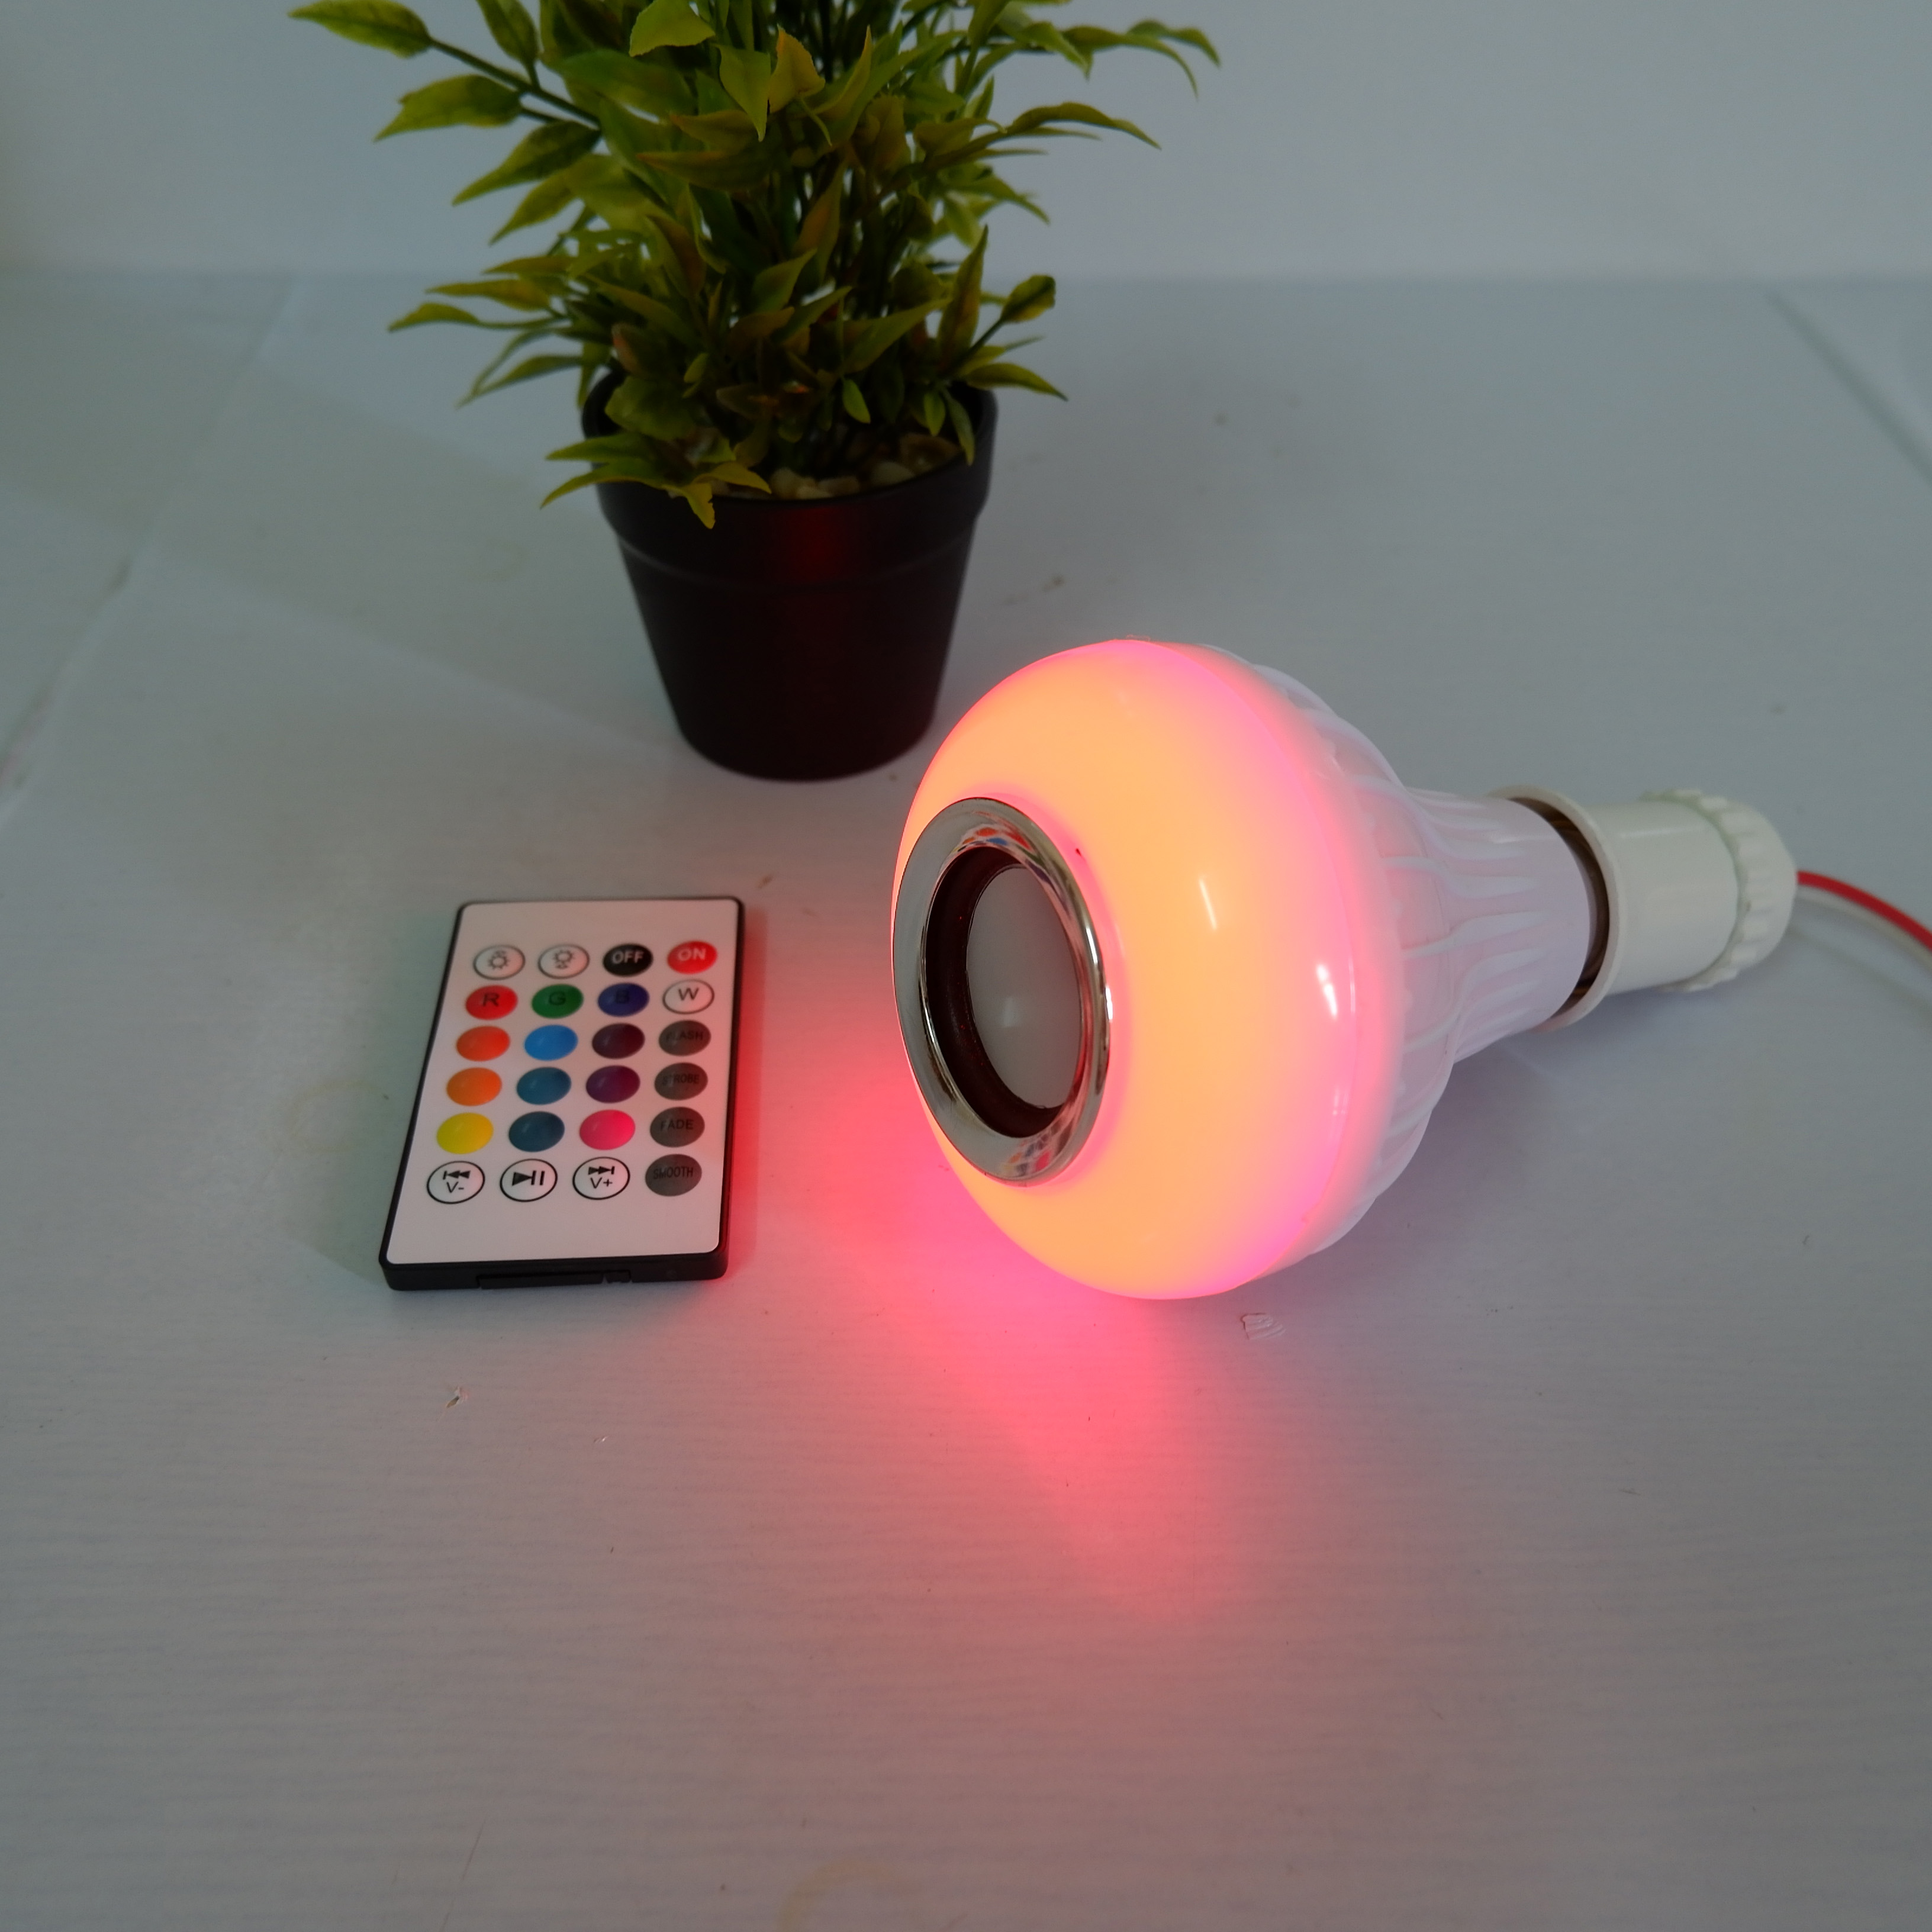 Bóng Đèn LED Thông Minh phát nhạc điều khiển bằng bluetooth + Tặng kèm 1 đèn led trang trí hình chai màu ngẫu nhiên